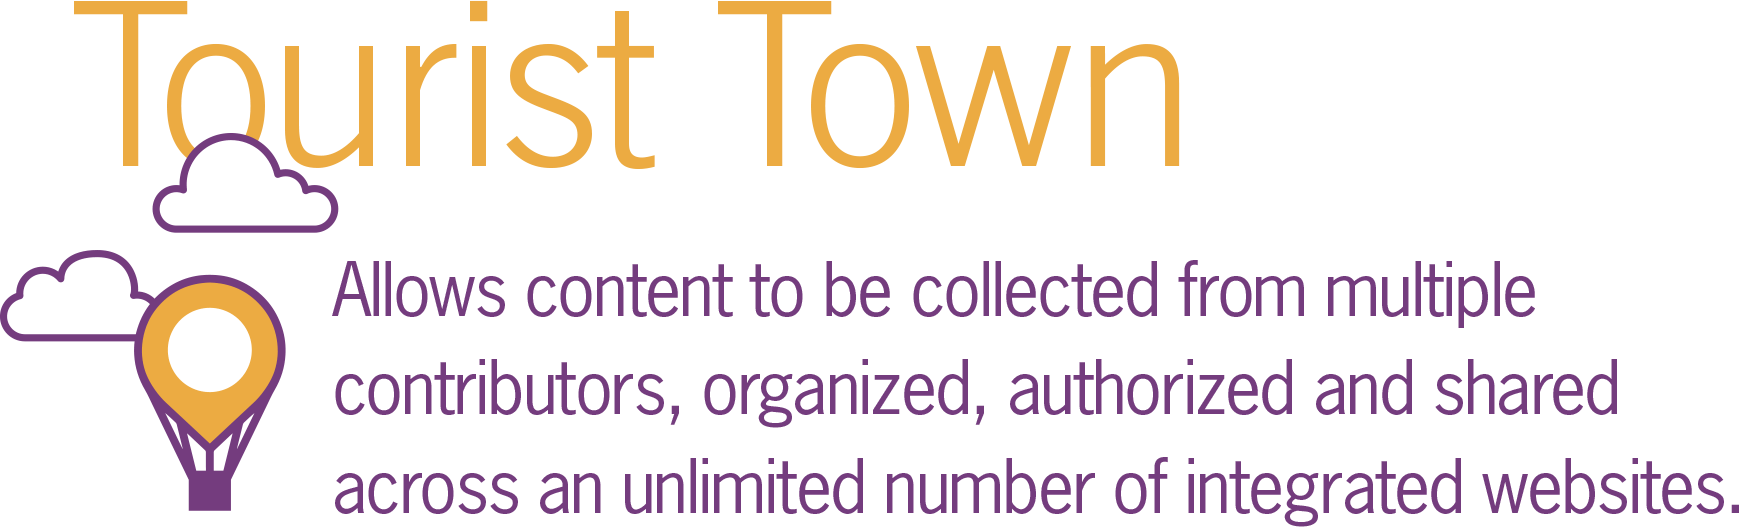 touristtown-graphic